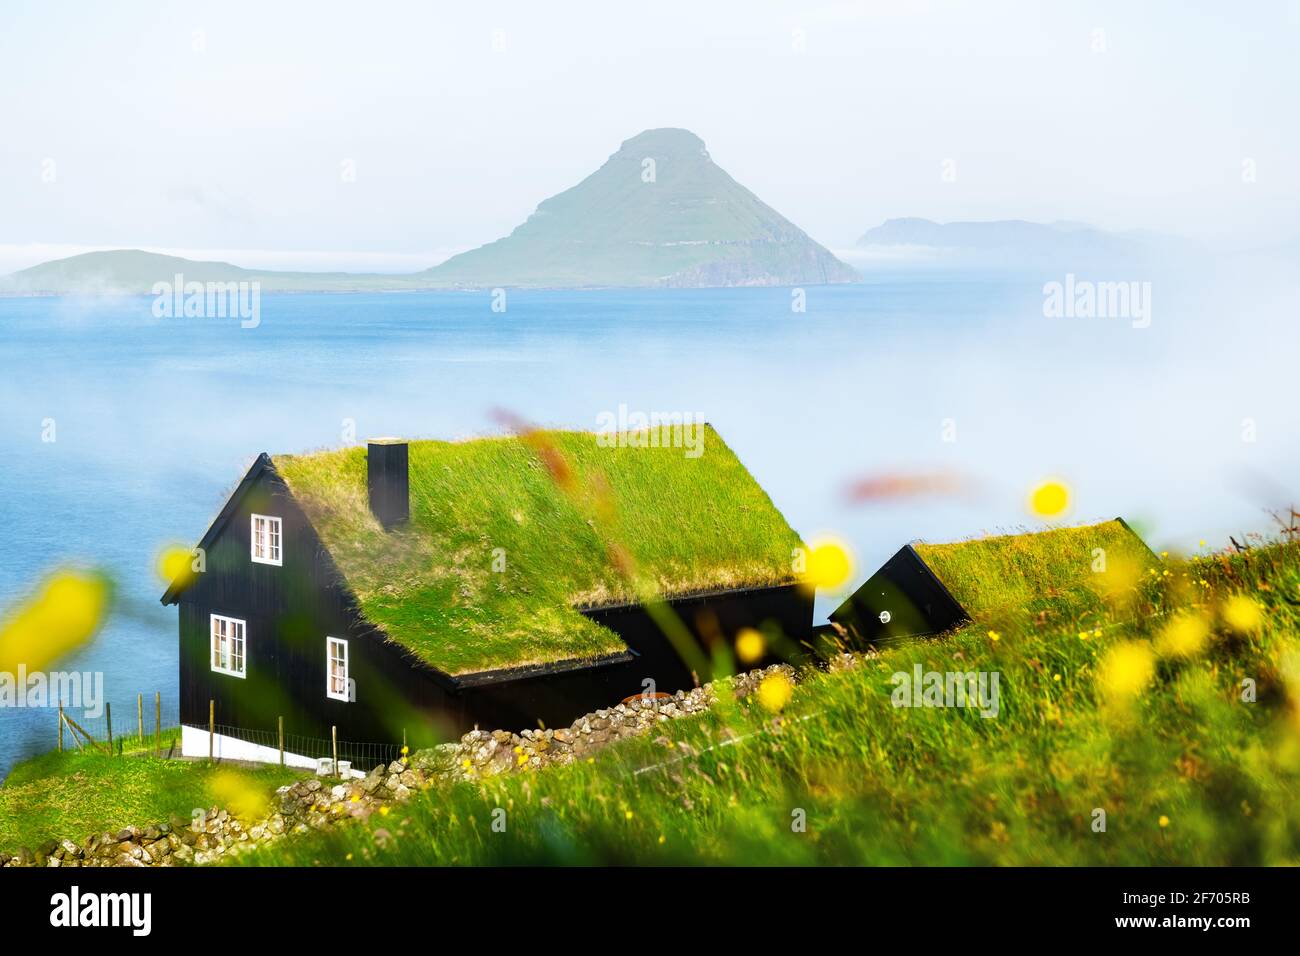 Vista mattutina di una casa con tetto tipico di erba in turf-top nel villaggio di Velbastadur sull'isola di Streymoy, isole Faroe, Danimarca. Foto orizzontale Foto Stock